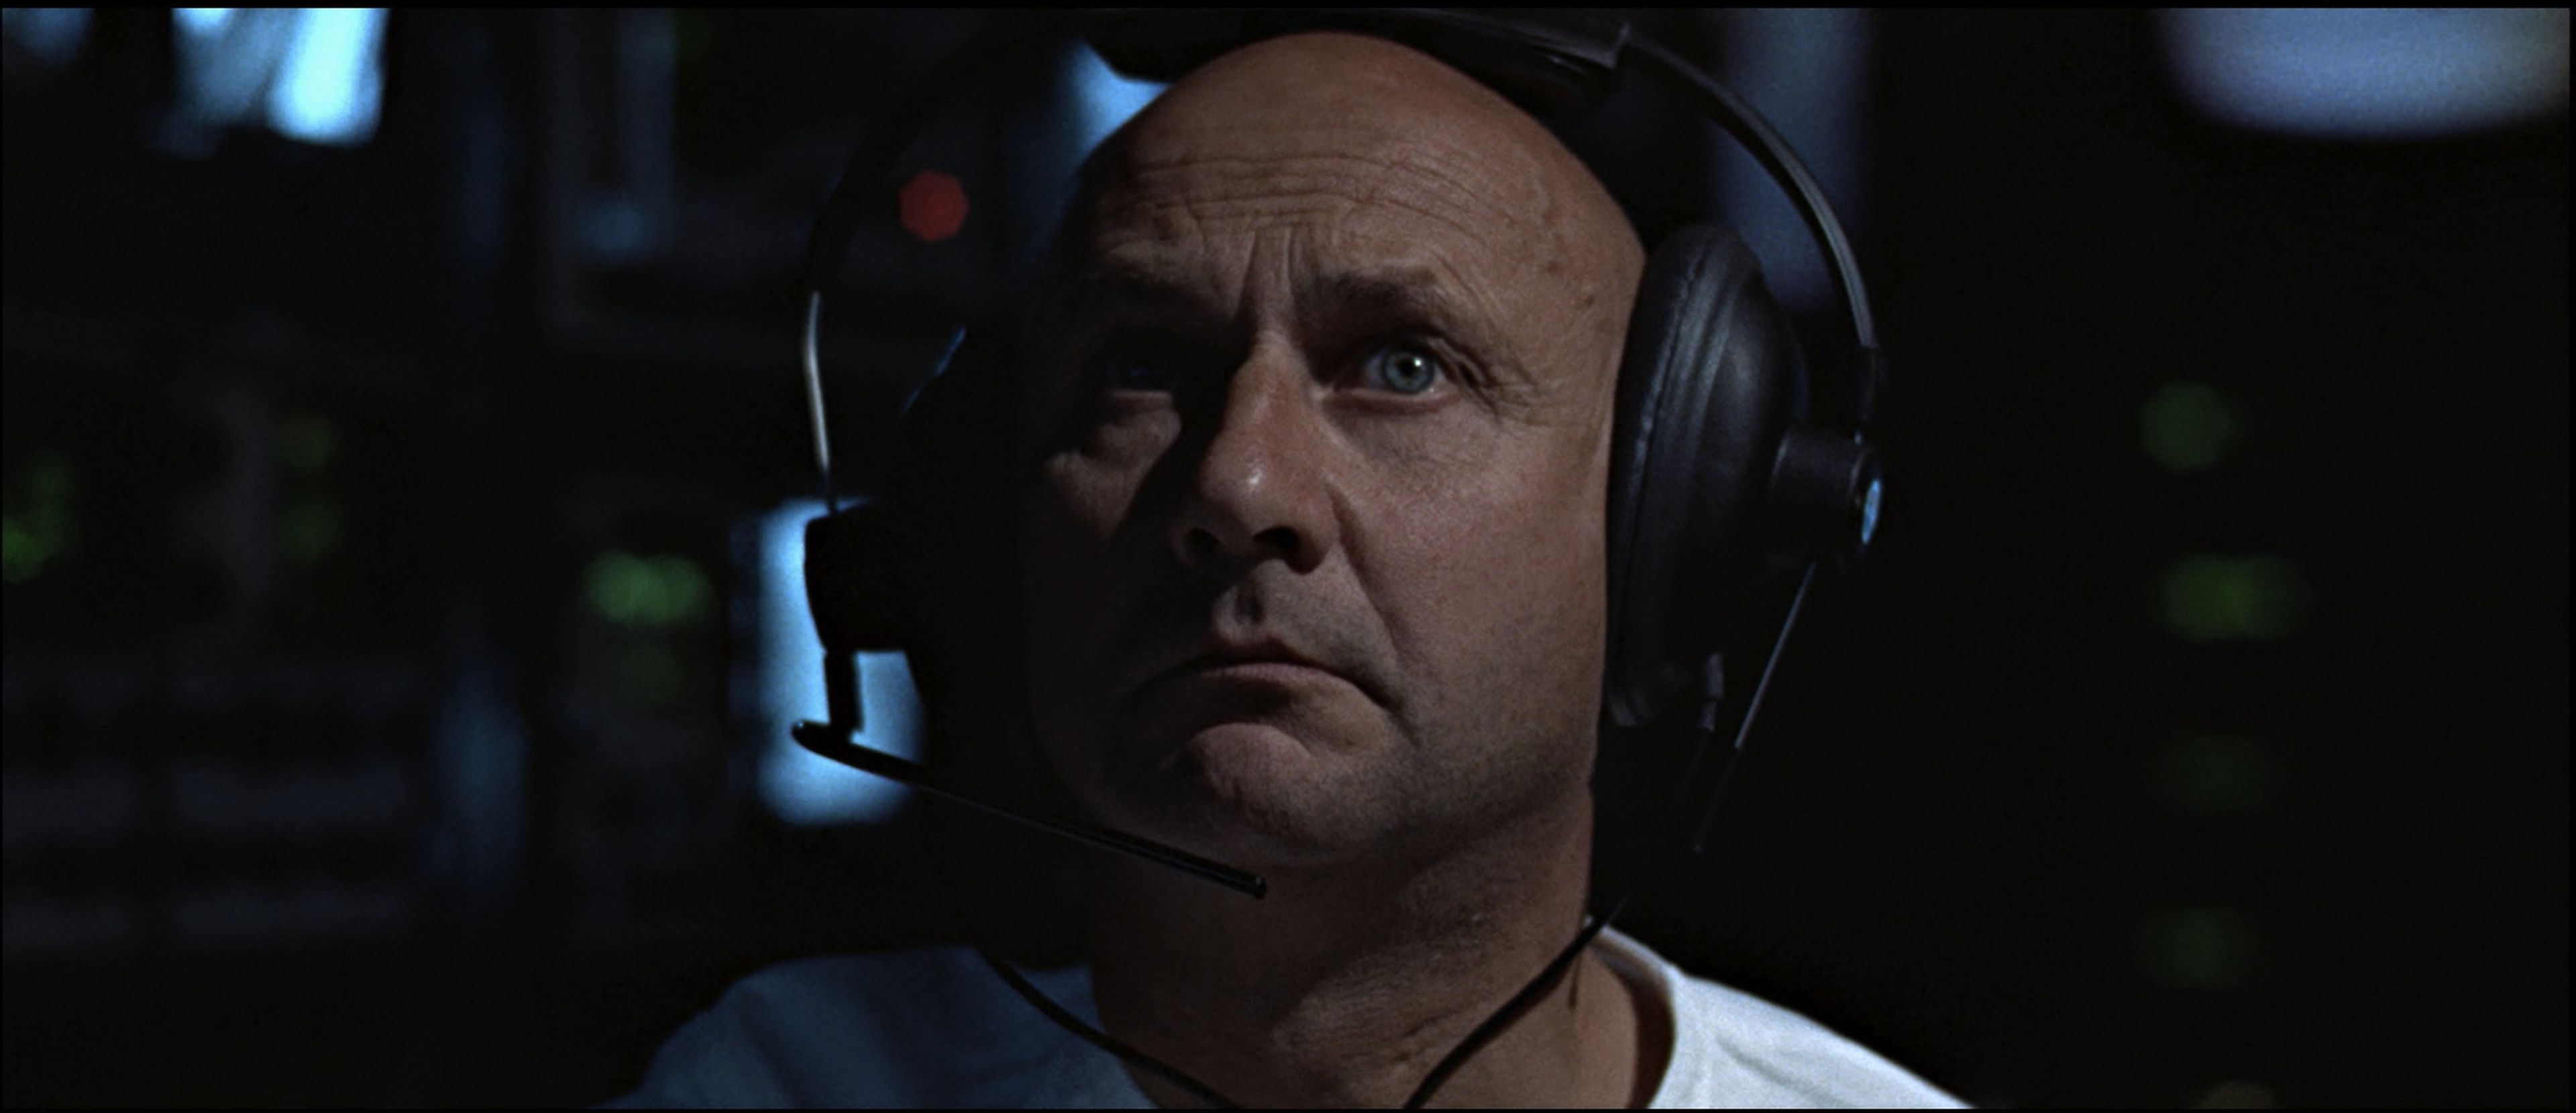 Cine de ciencia ficción: THX 1138